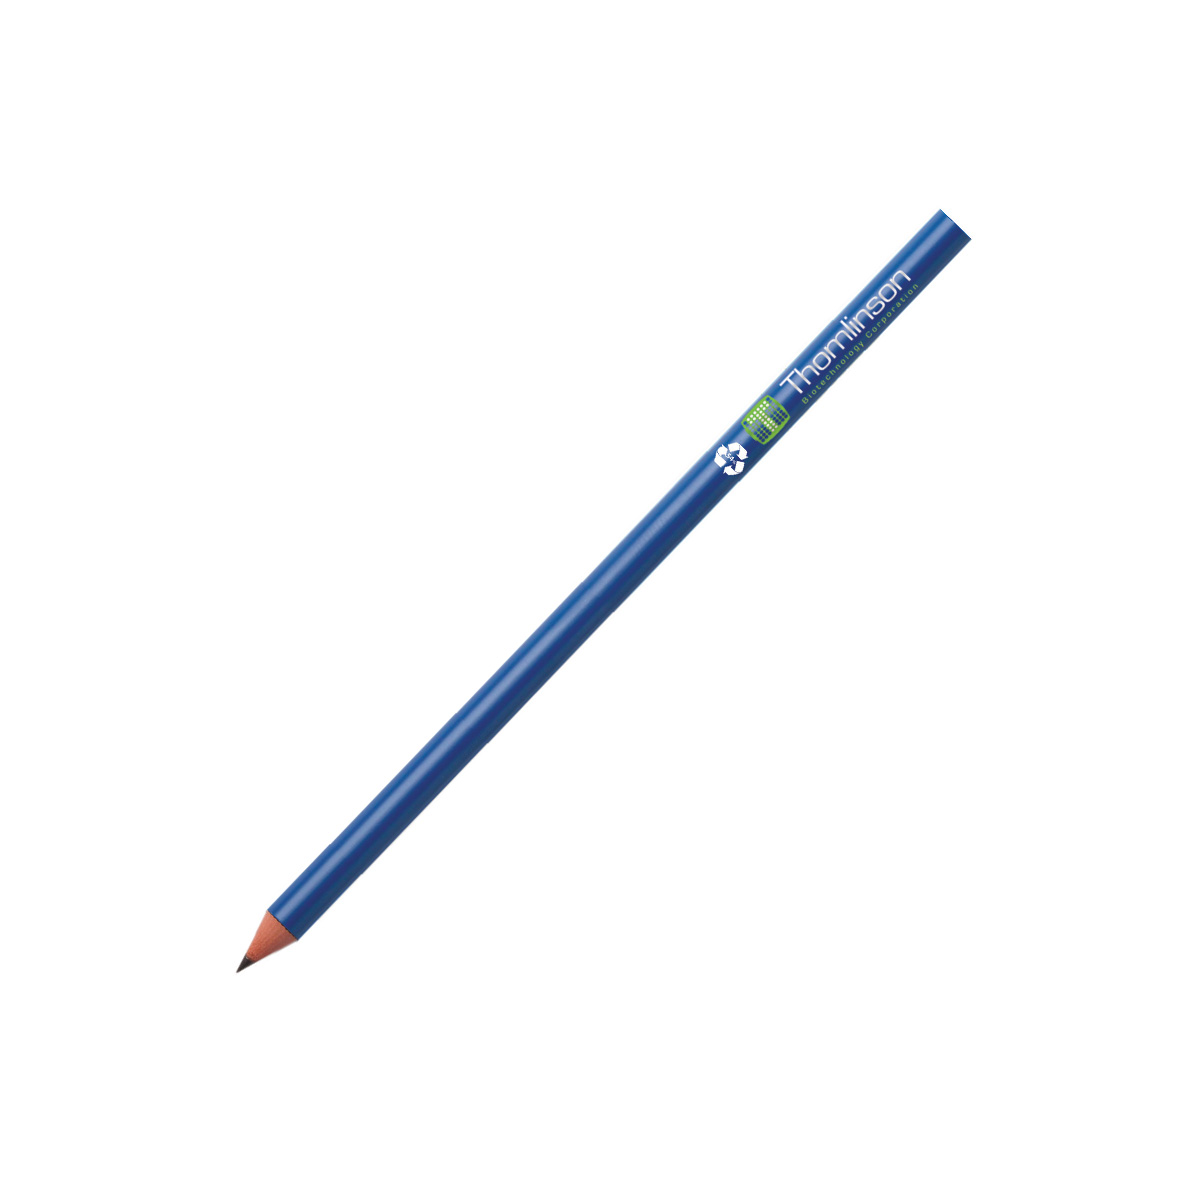 Alfaplus_evolution pencil